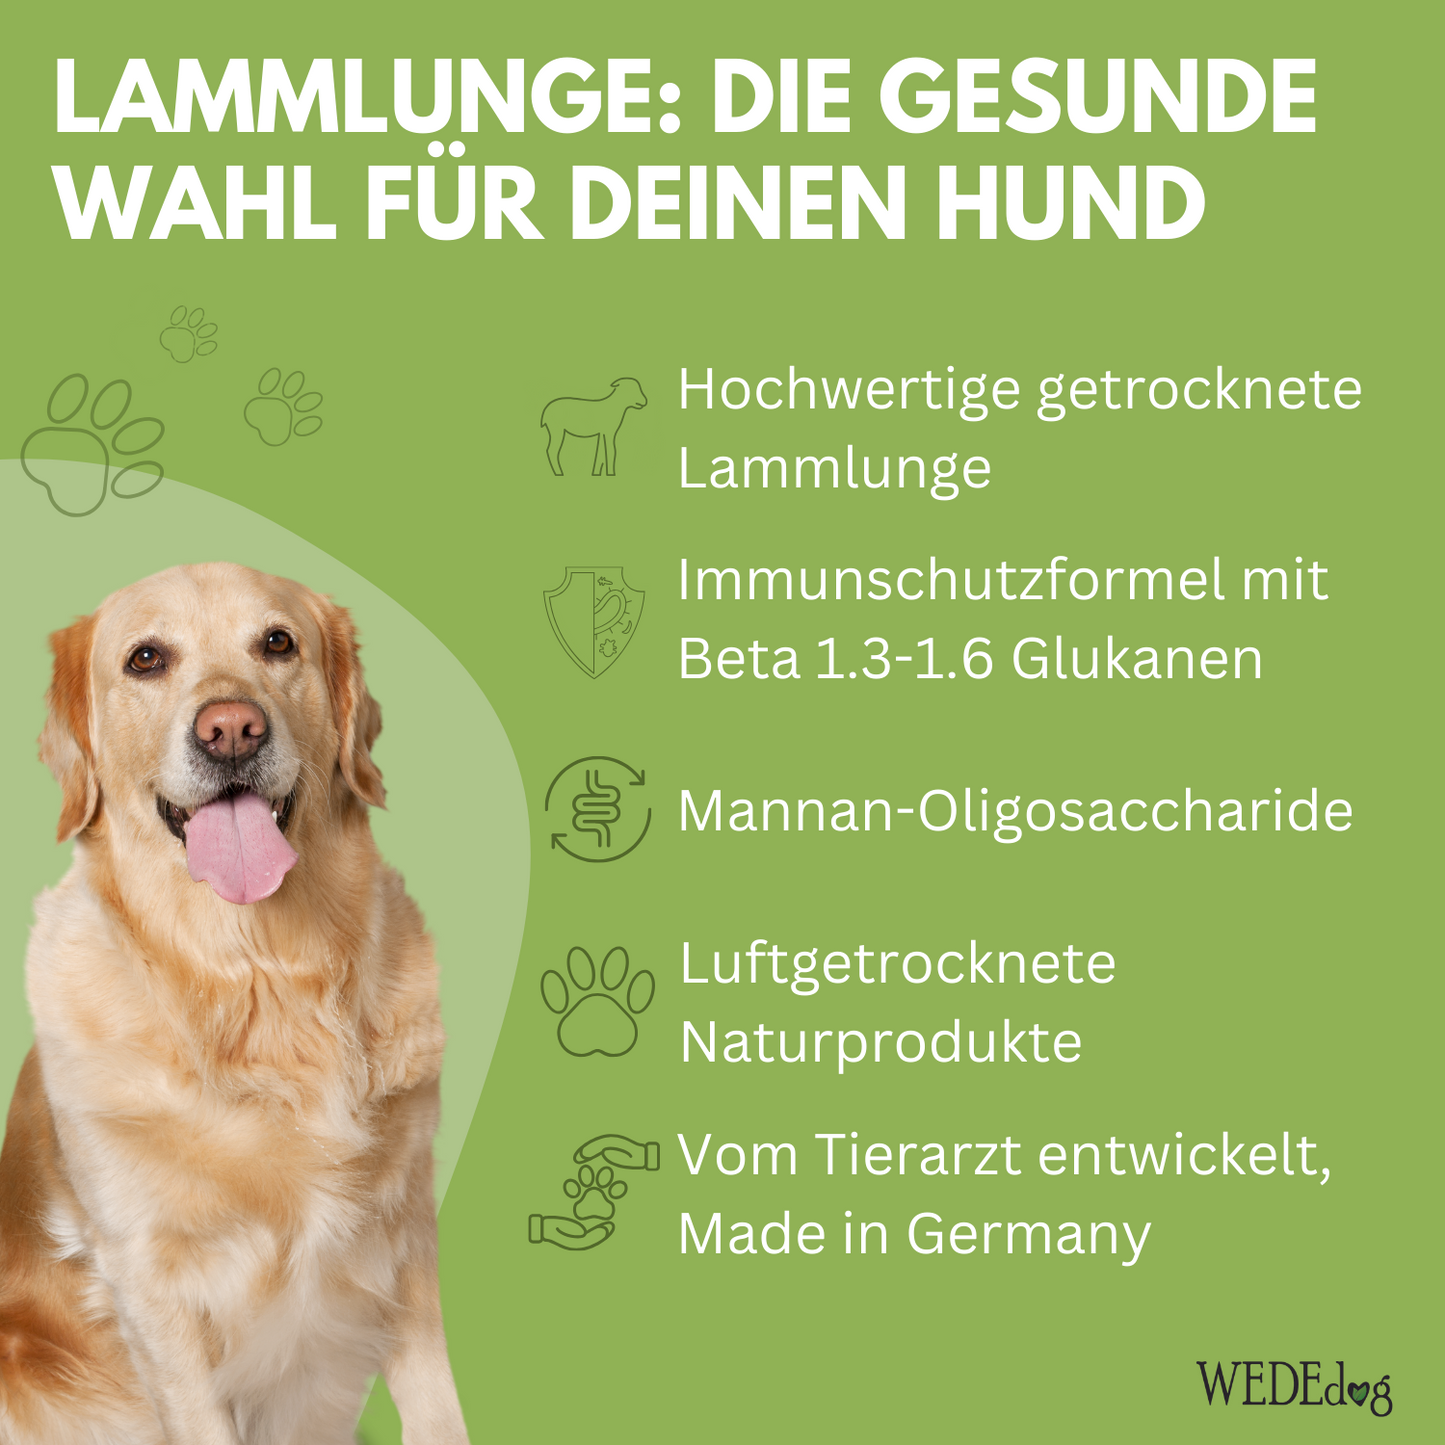 Lammlunge getrocknet für Hunde mit Immun+ Schutzformel I WEDEdog PURE+ Lammlunge getrocknet I Lammlunge Hund in Premium-Qualität I 150g